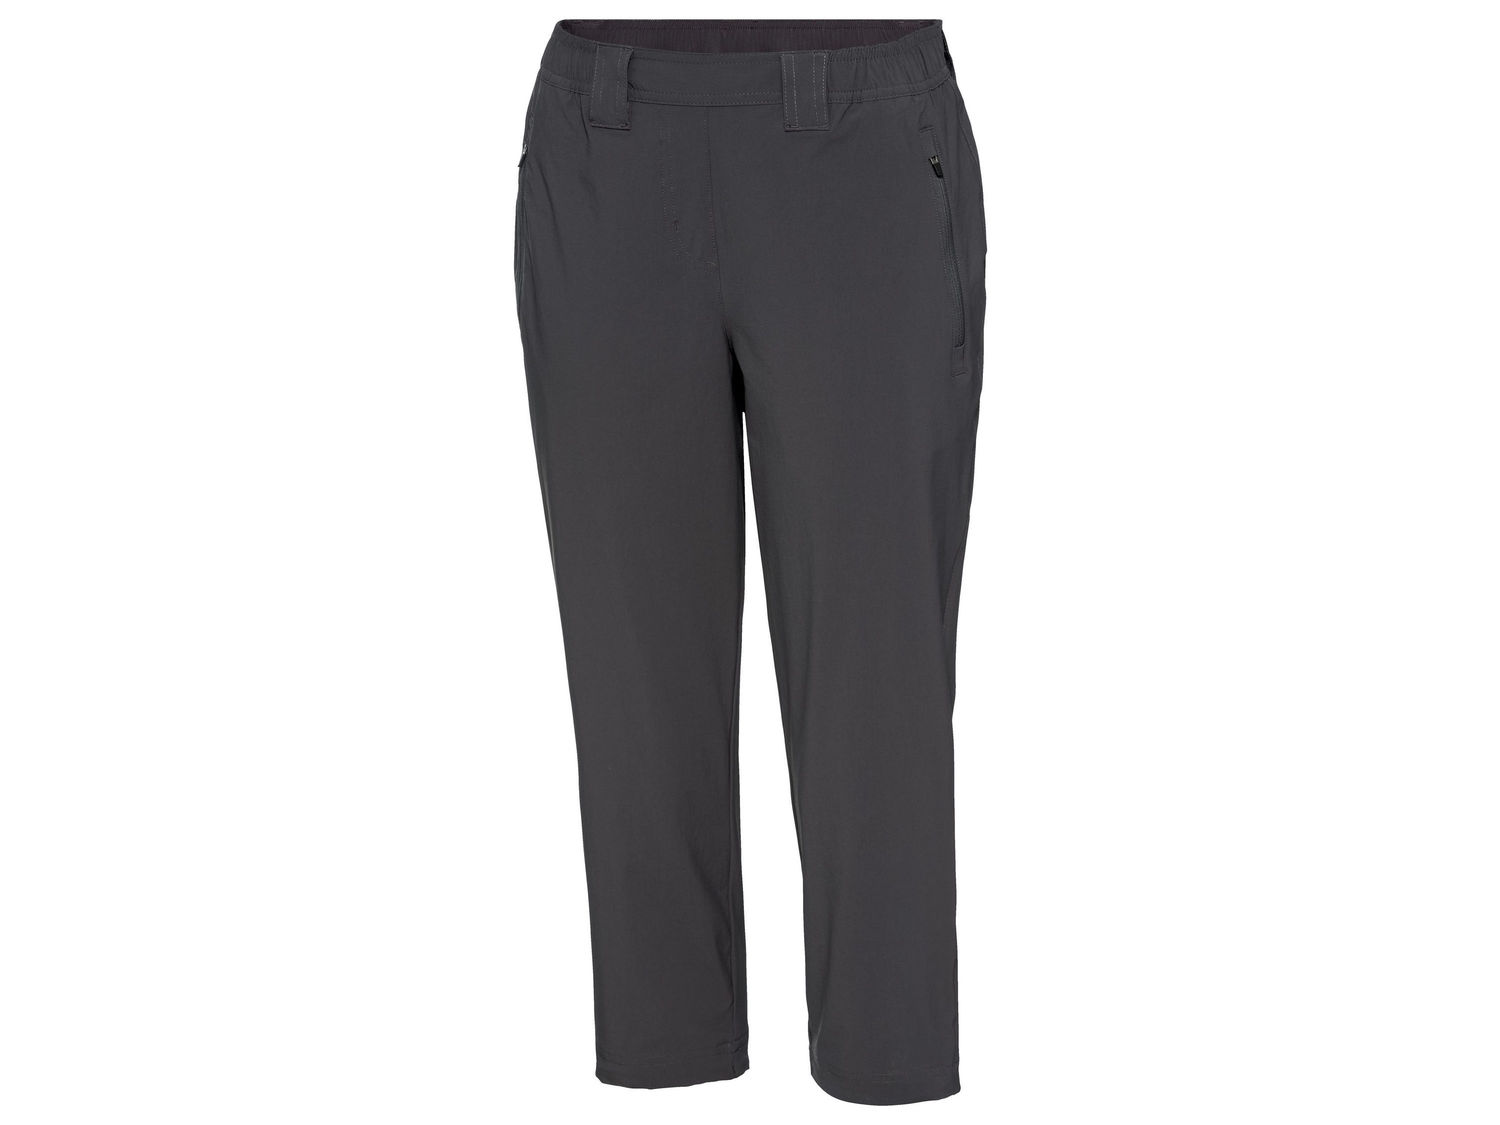 Pantaloni da trekking per donna Crivit, prezzo 11.99 &#8364; 
Misure: 38-46
- ...